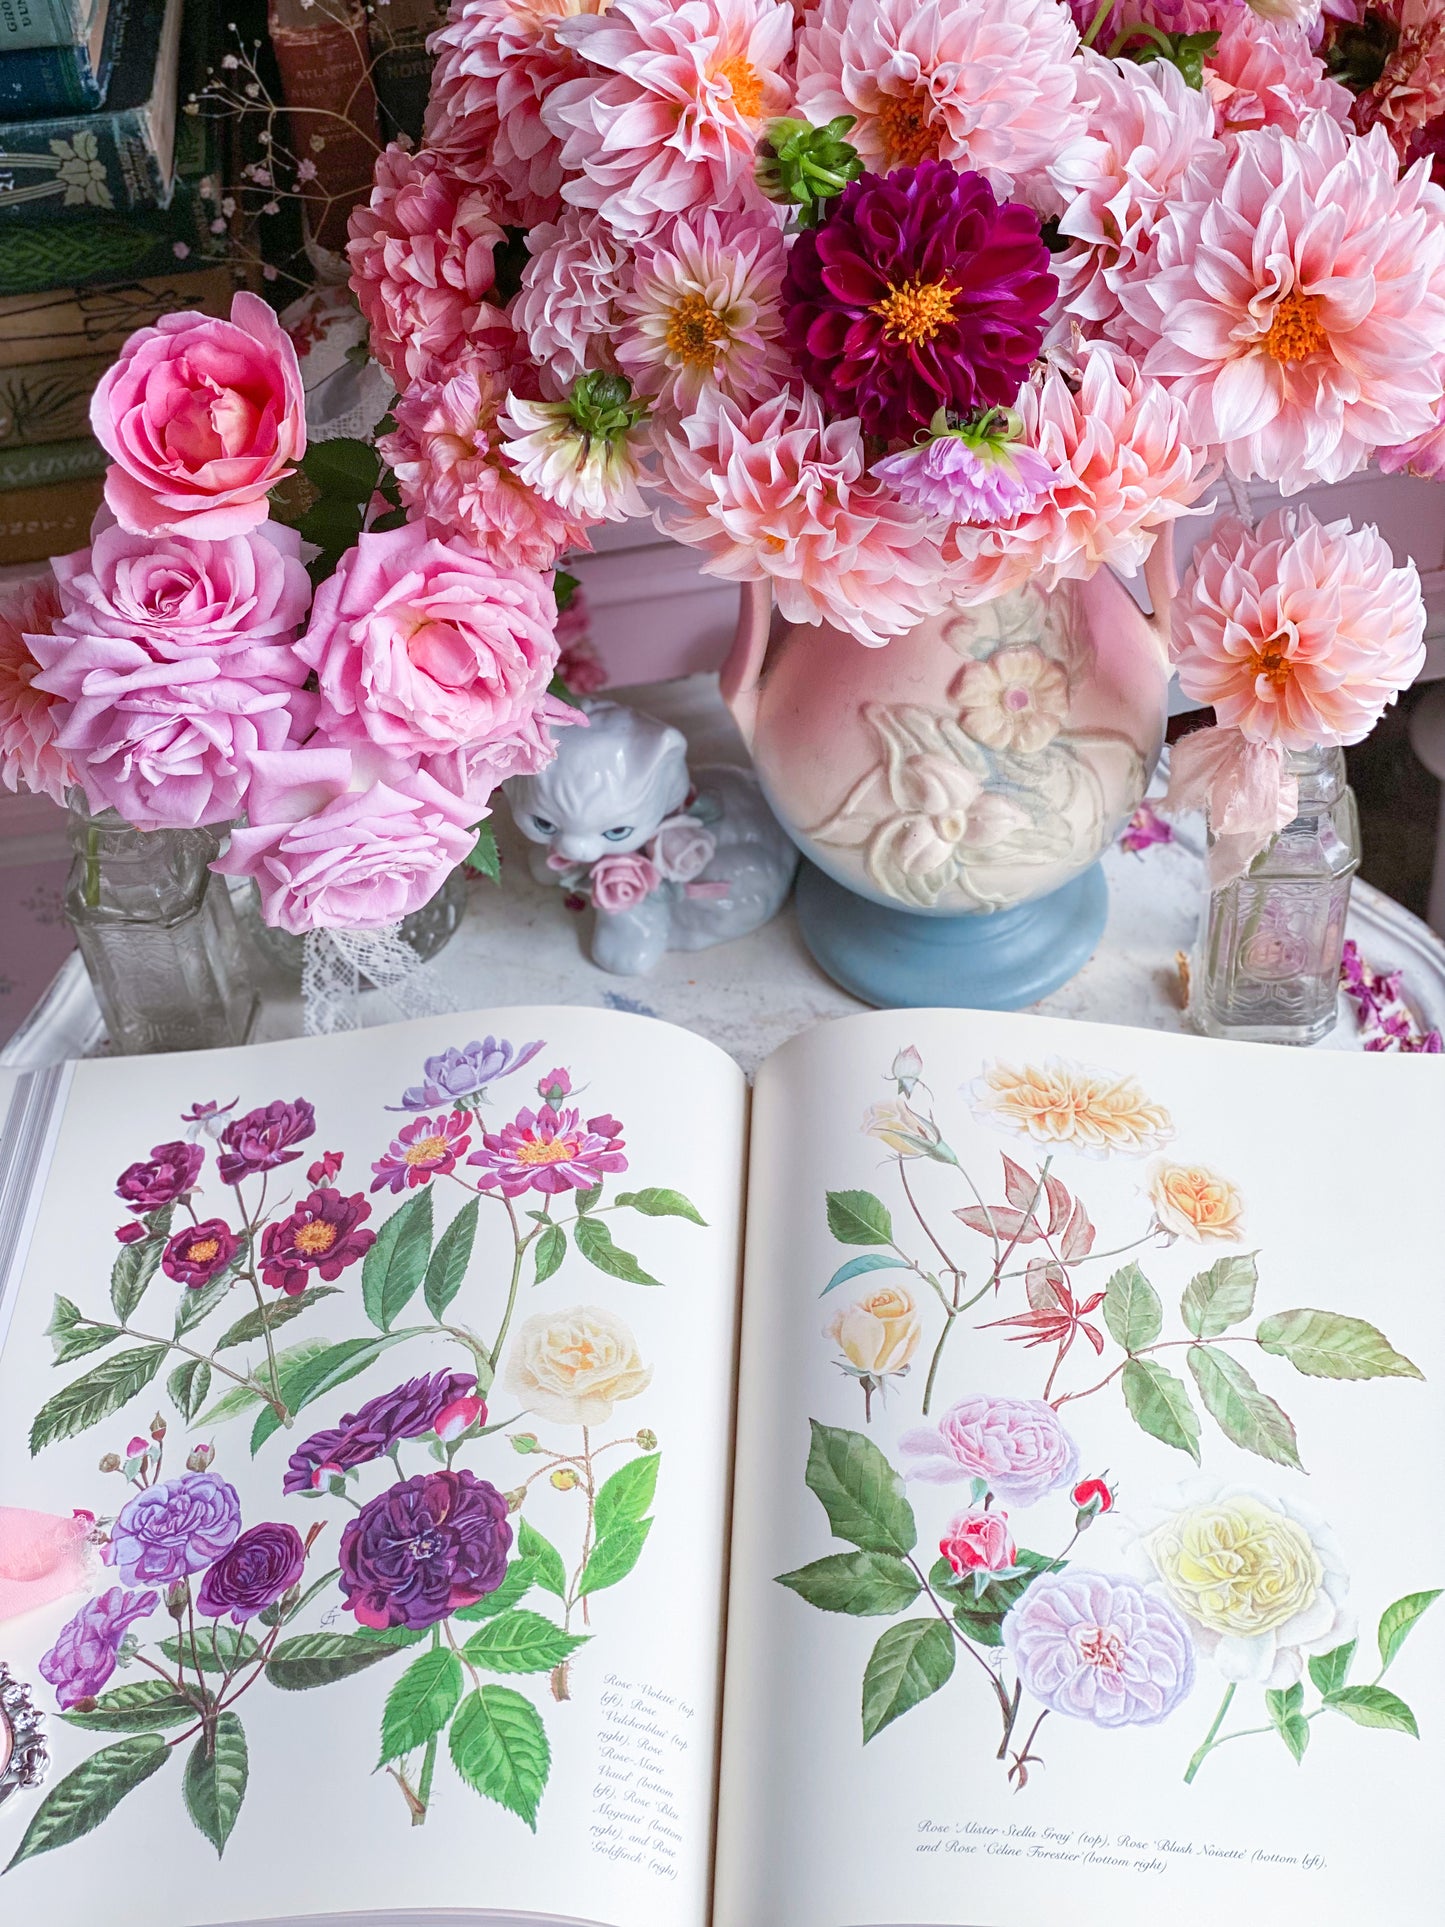 Pinturas y dibujos florales completos de Graham Stuart Thomas 